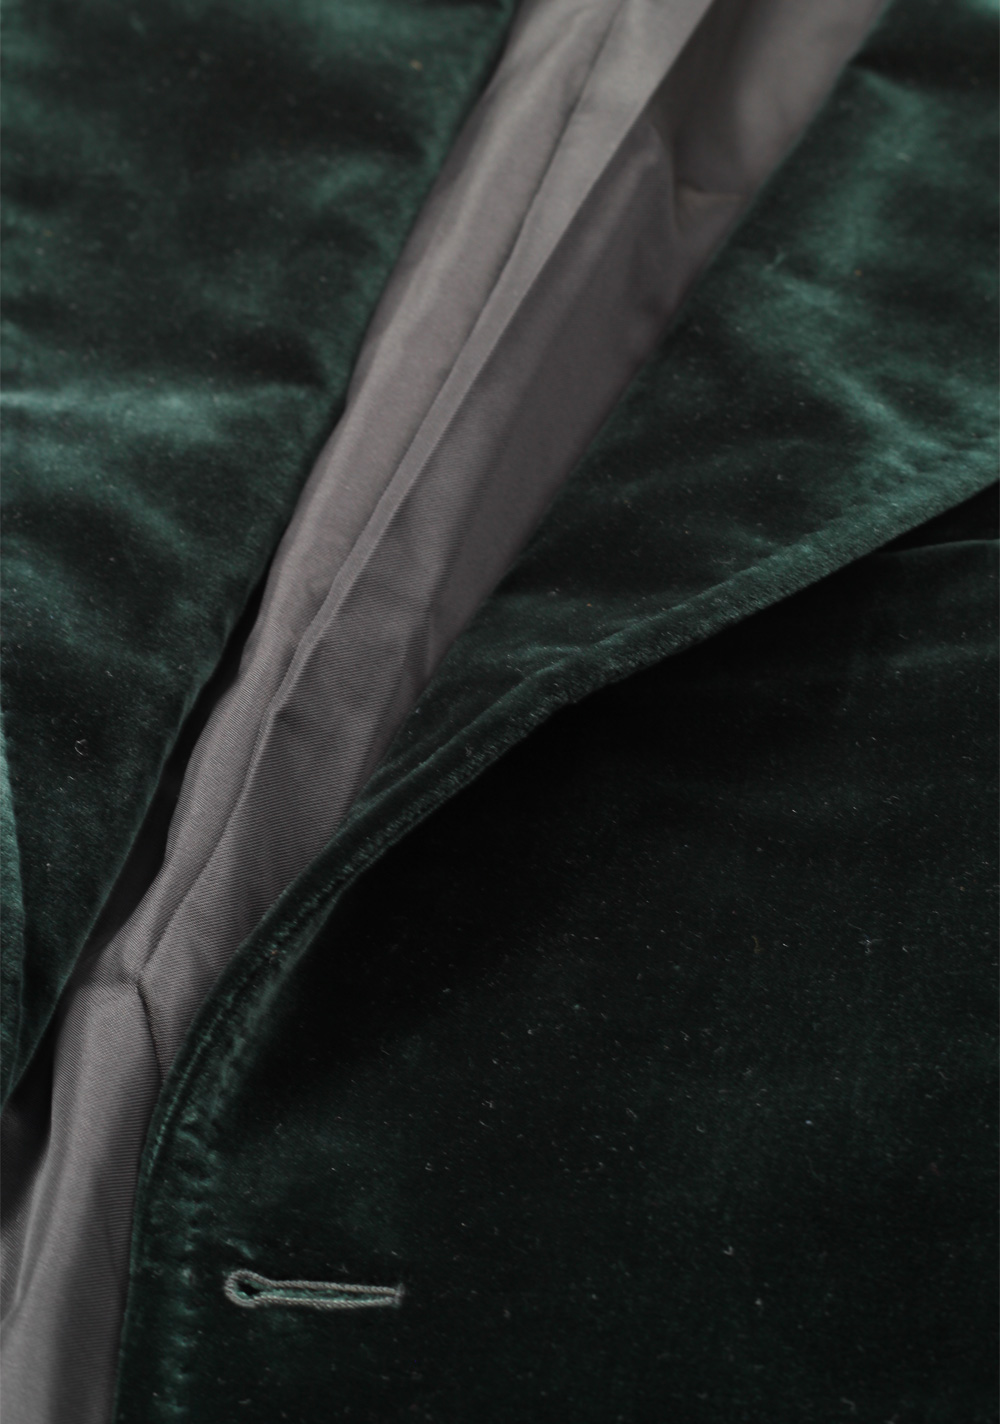 Shelton Velvet Green Sport Coat Size Size 48C / 38S U.S. | Costume Limité